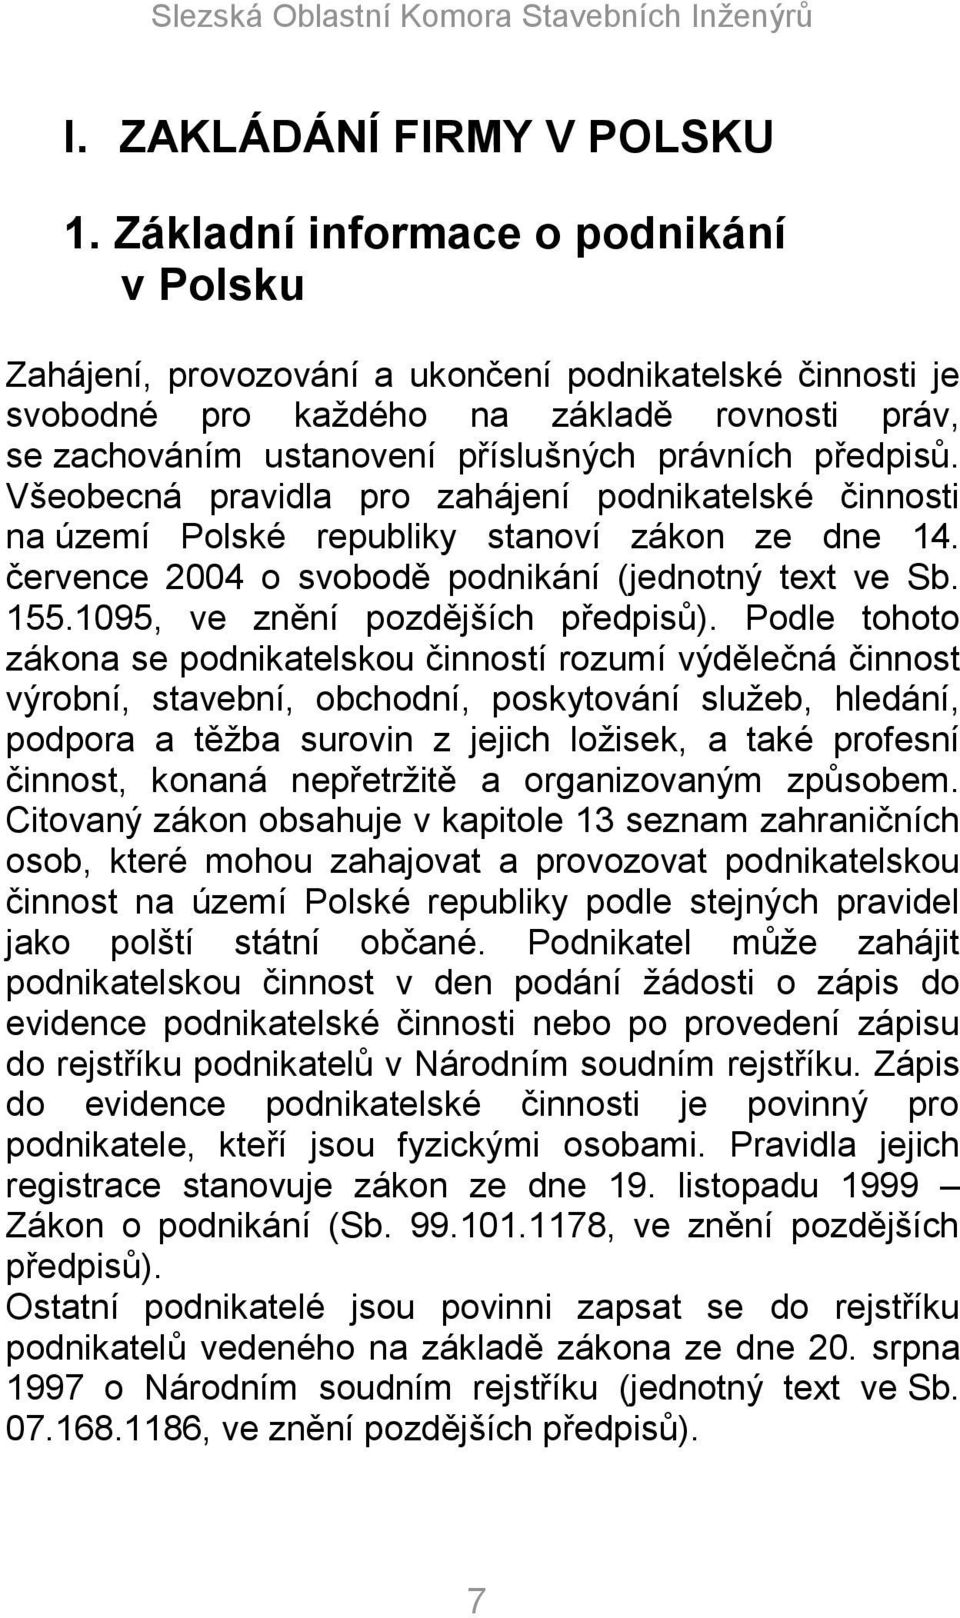 předpisů. Všeobecná pravidla pro zahájení podnikatelské činnosti na území Polské republiky stanoví zákon ze dne 14. července 2004 o svobodě podnikání (jednotný text ve Sb. 155.